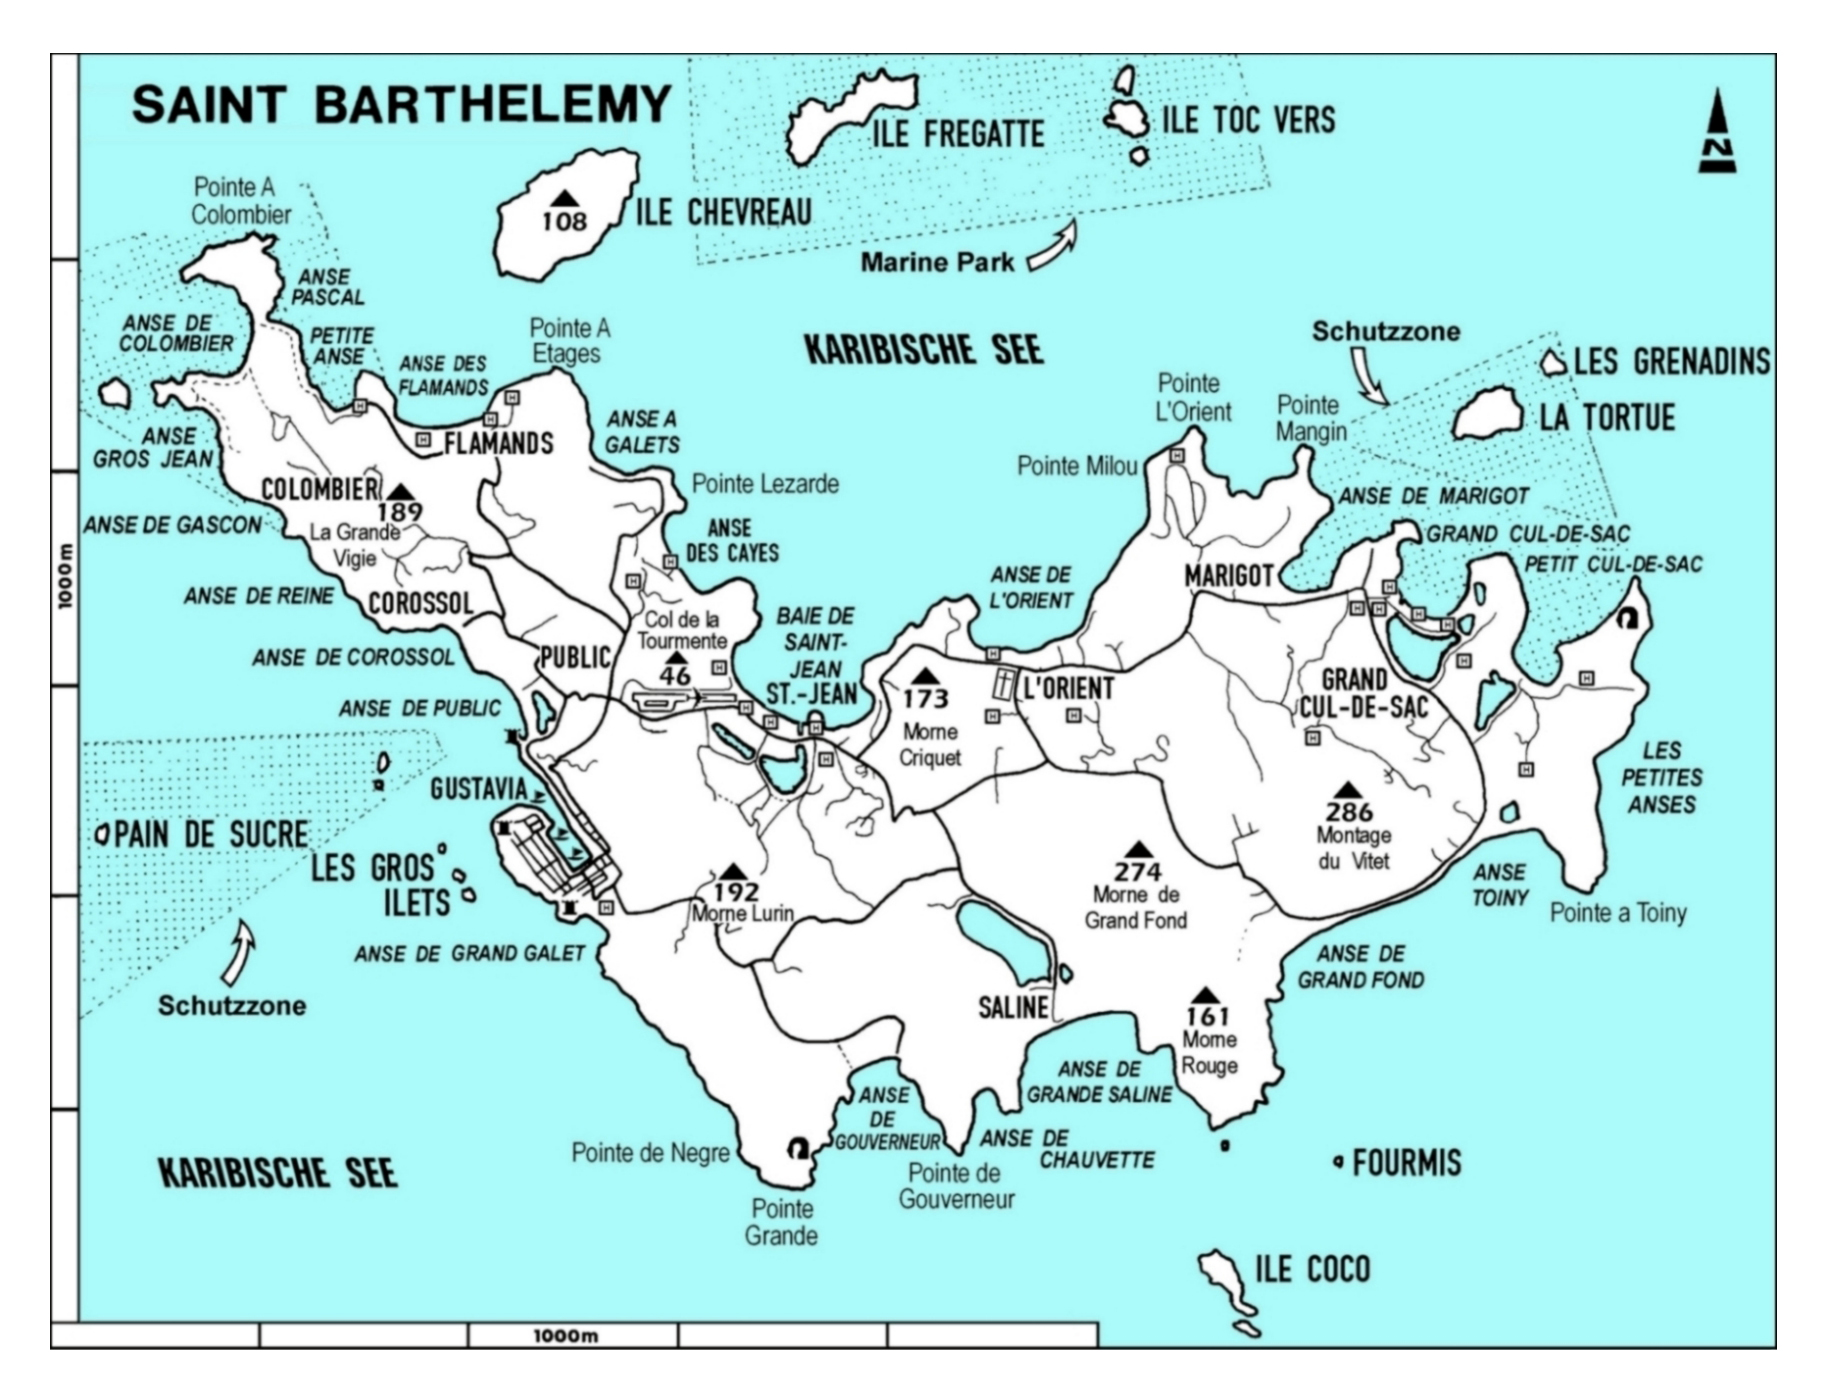 St barths map